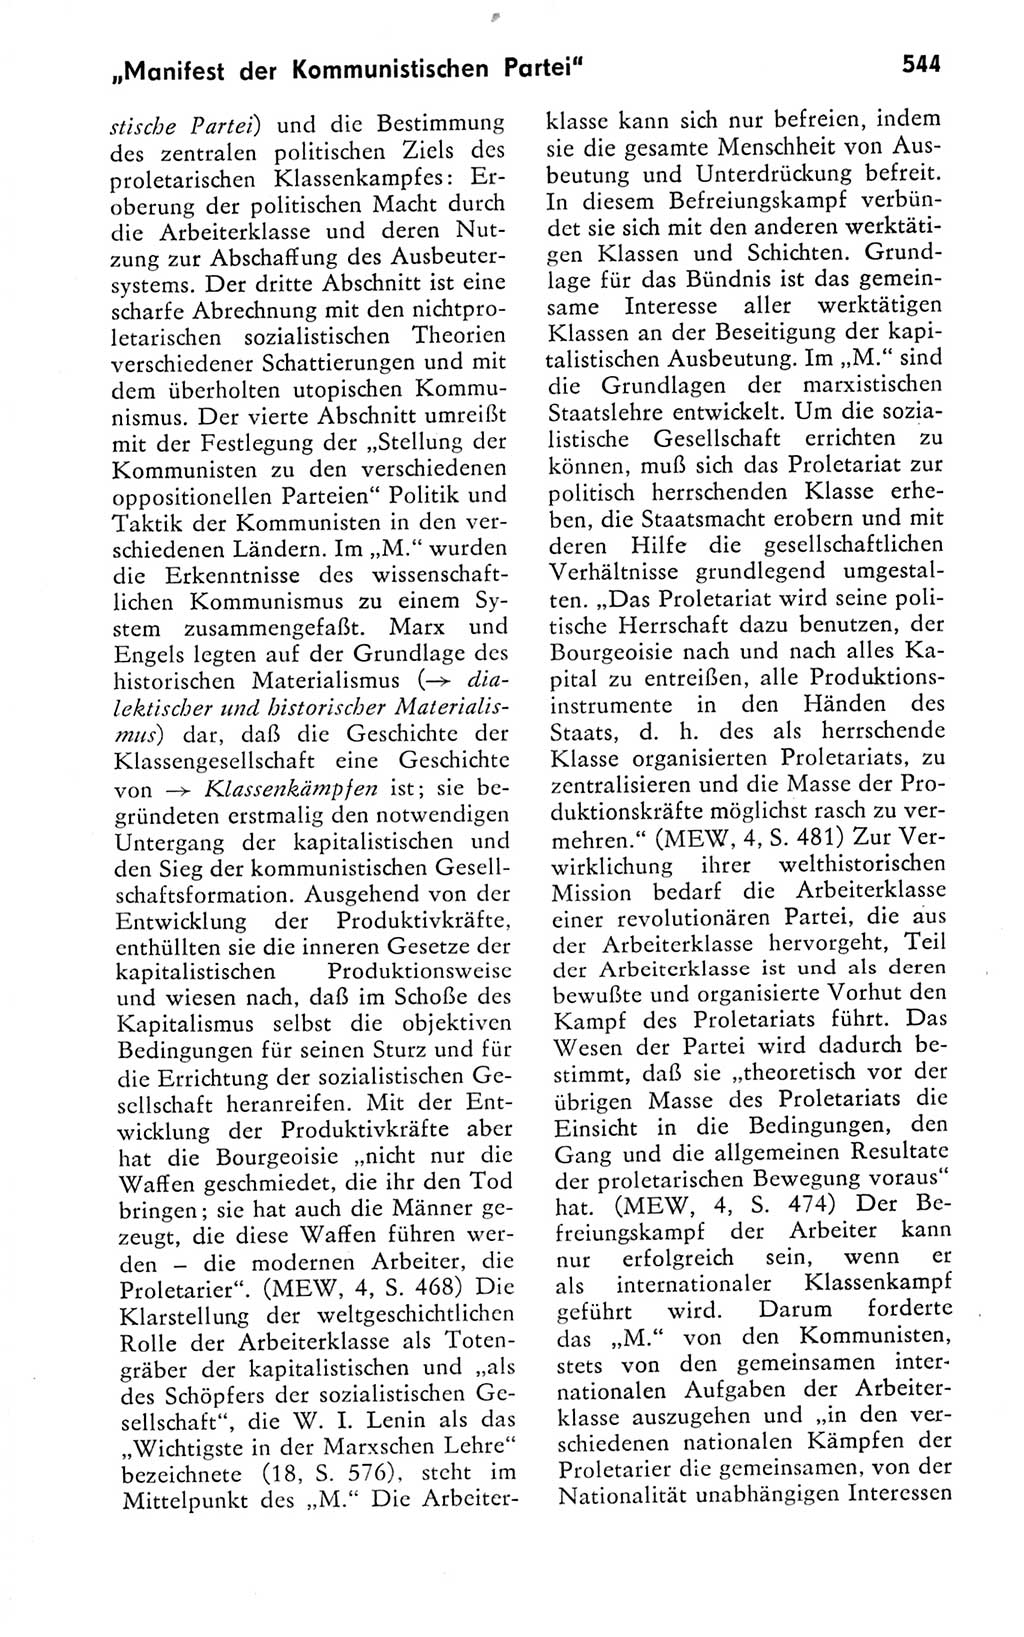 Kleines politisches Wörterbuch [Deutsche Demokratische Republik (DDR)] 1978, Seite 544 (Kl. pol. Wb. DDR 1978, S. 544)